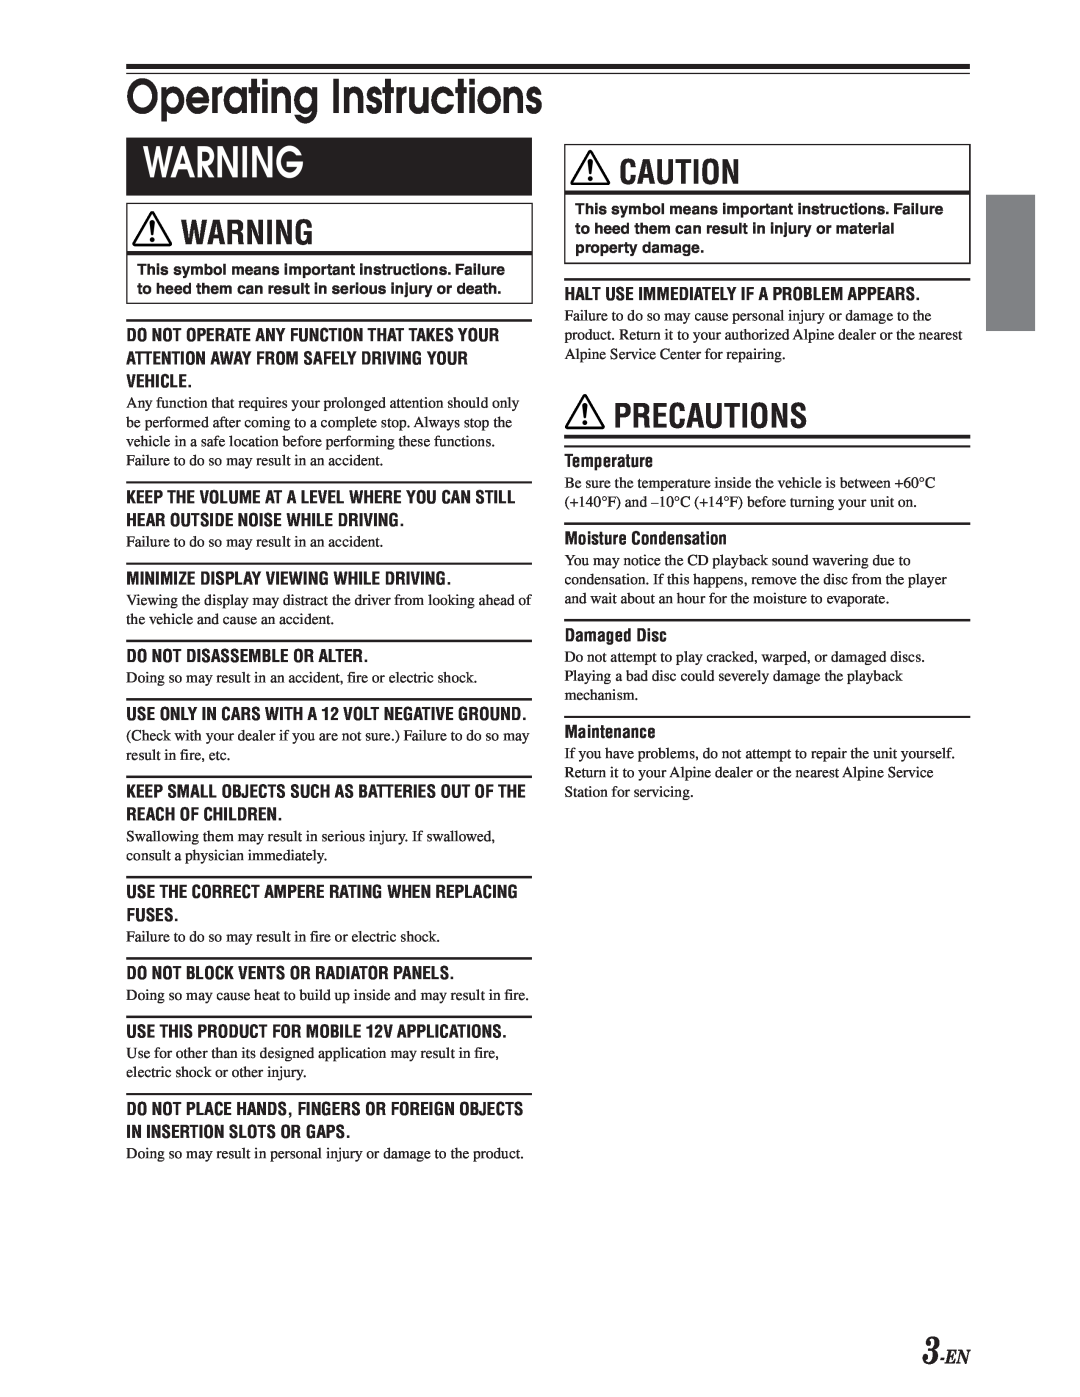 Alpine CDA-9847 owner manual Precautions, 3-EN, Operating Instructions 